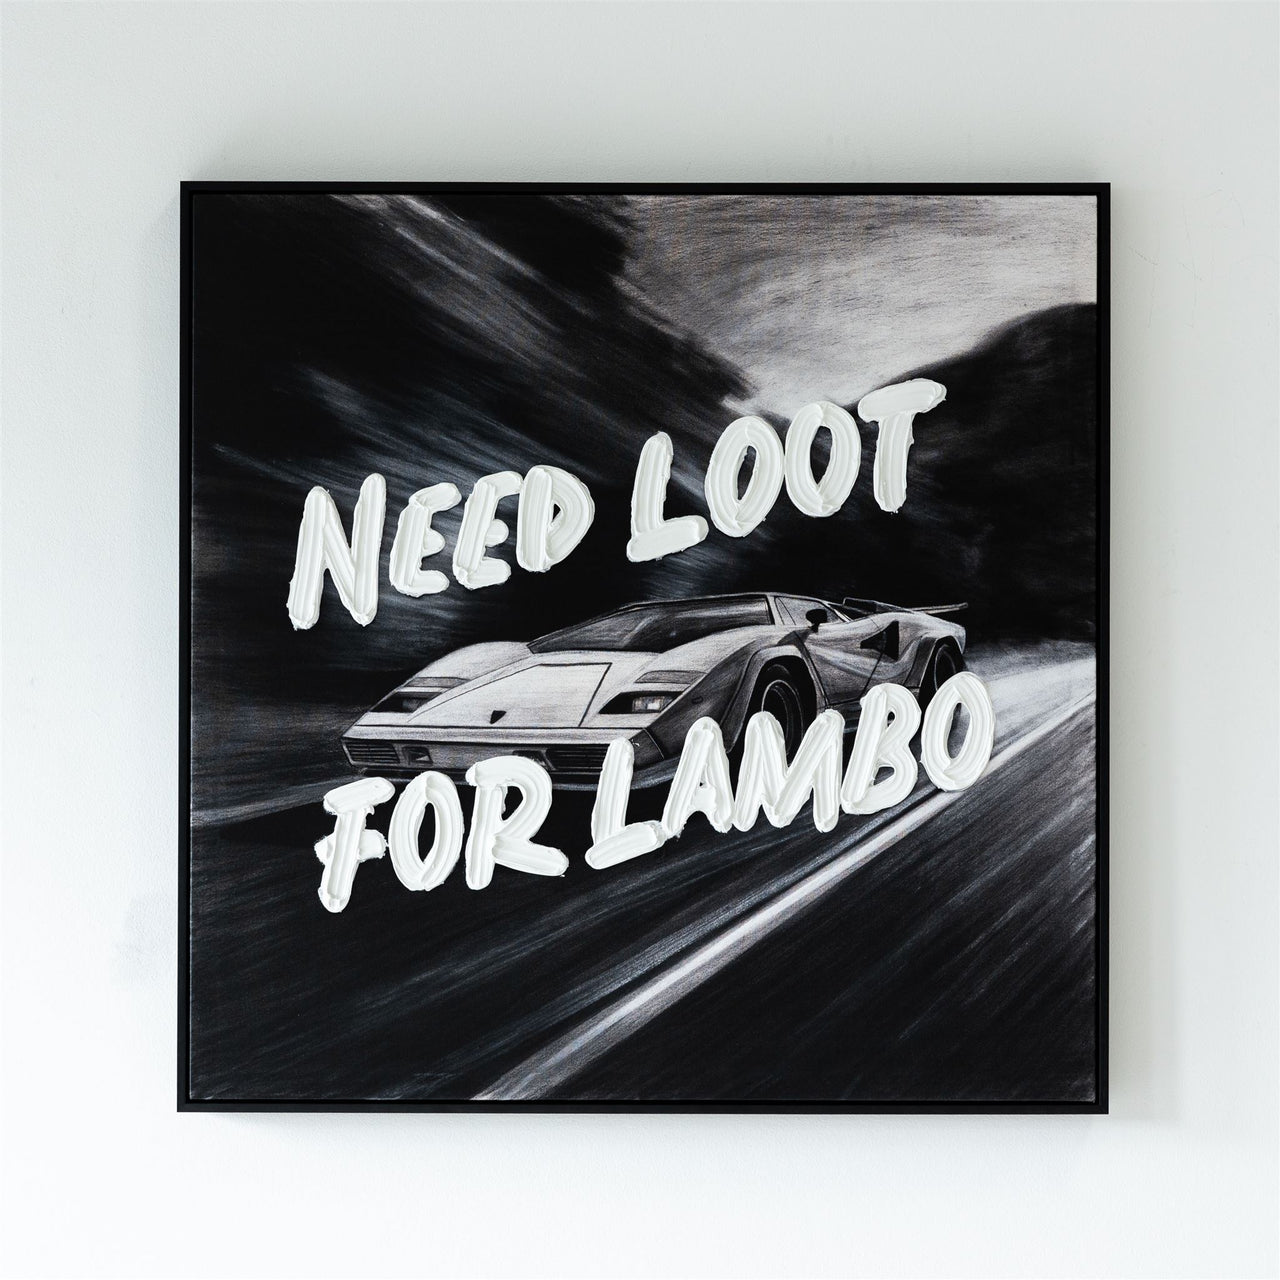 NEED LOOT FOR LAMBO PRINT